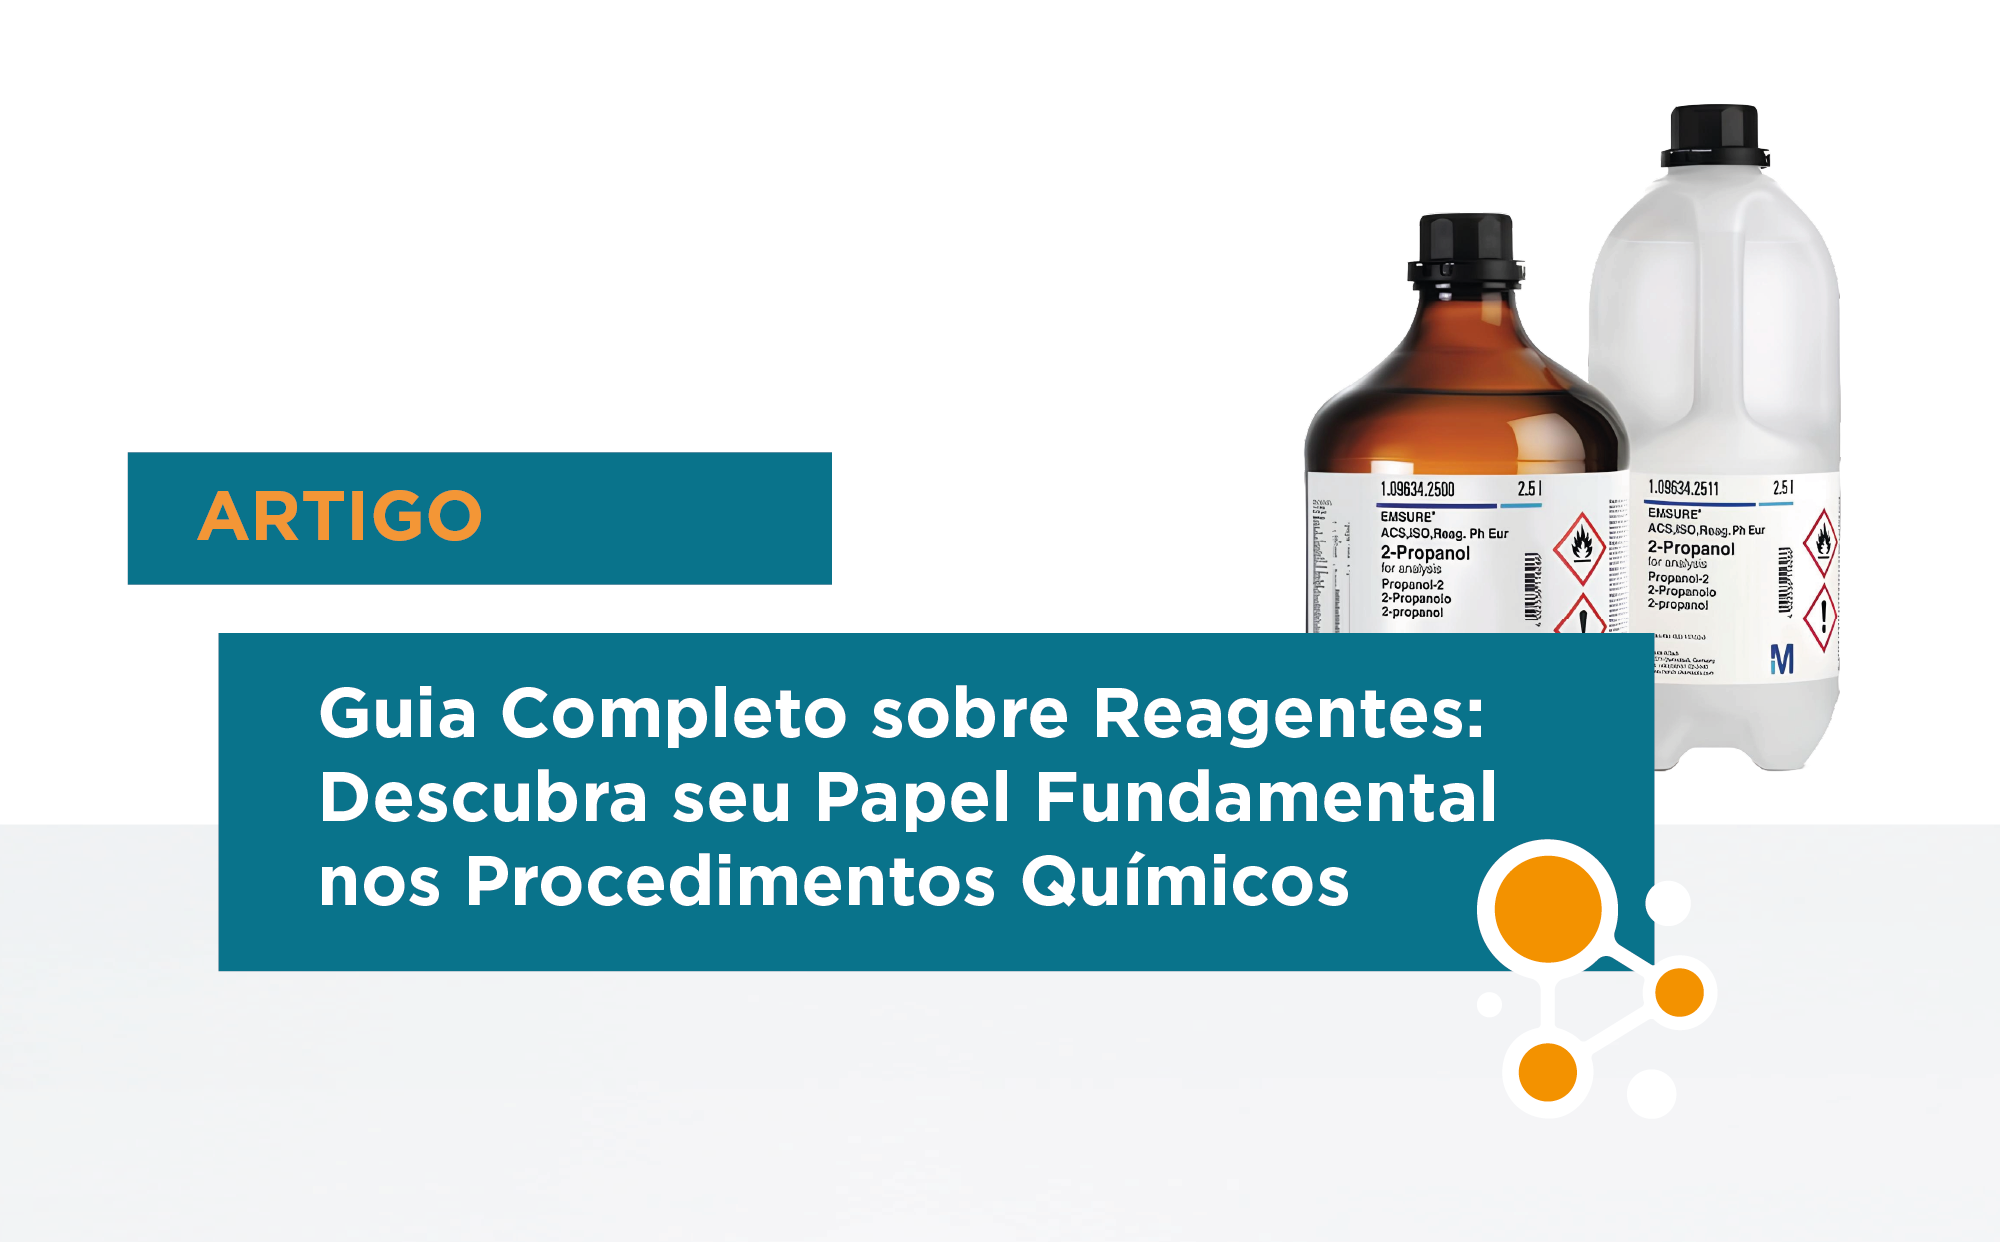 Guia Completo sobre Reagentes: Descubra seu Papel Fundamental nos Procedimentos Químicos